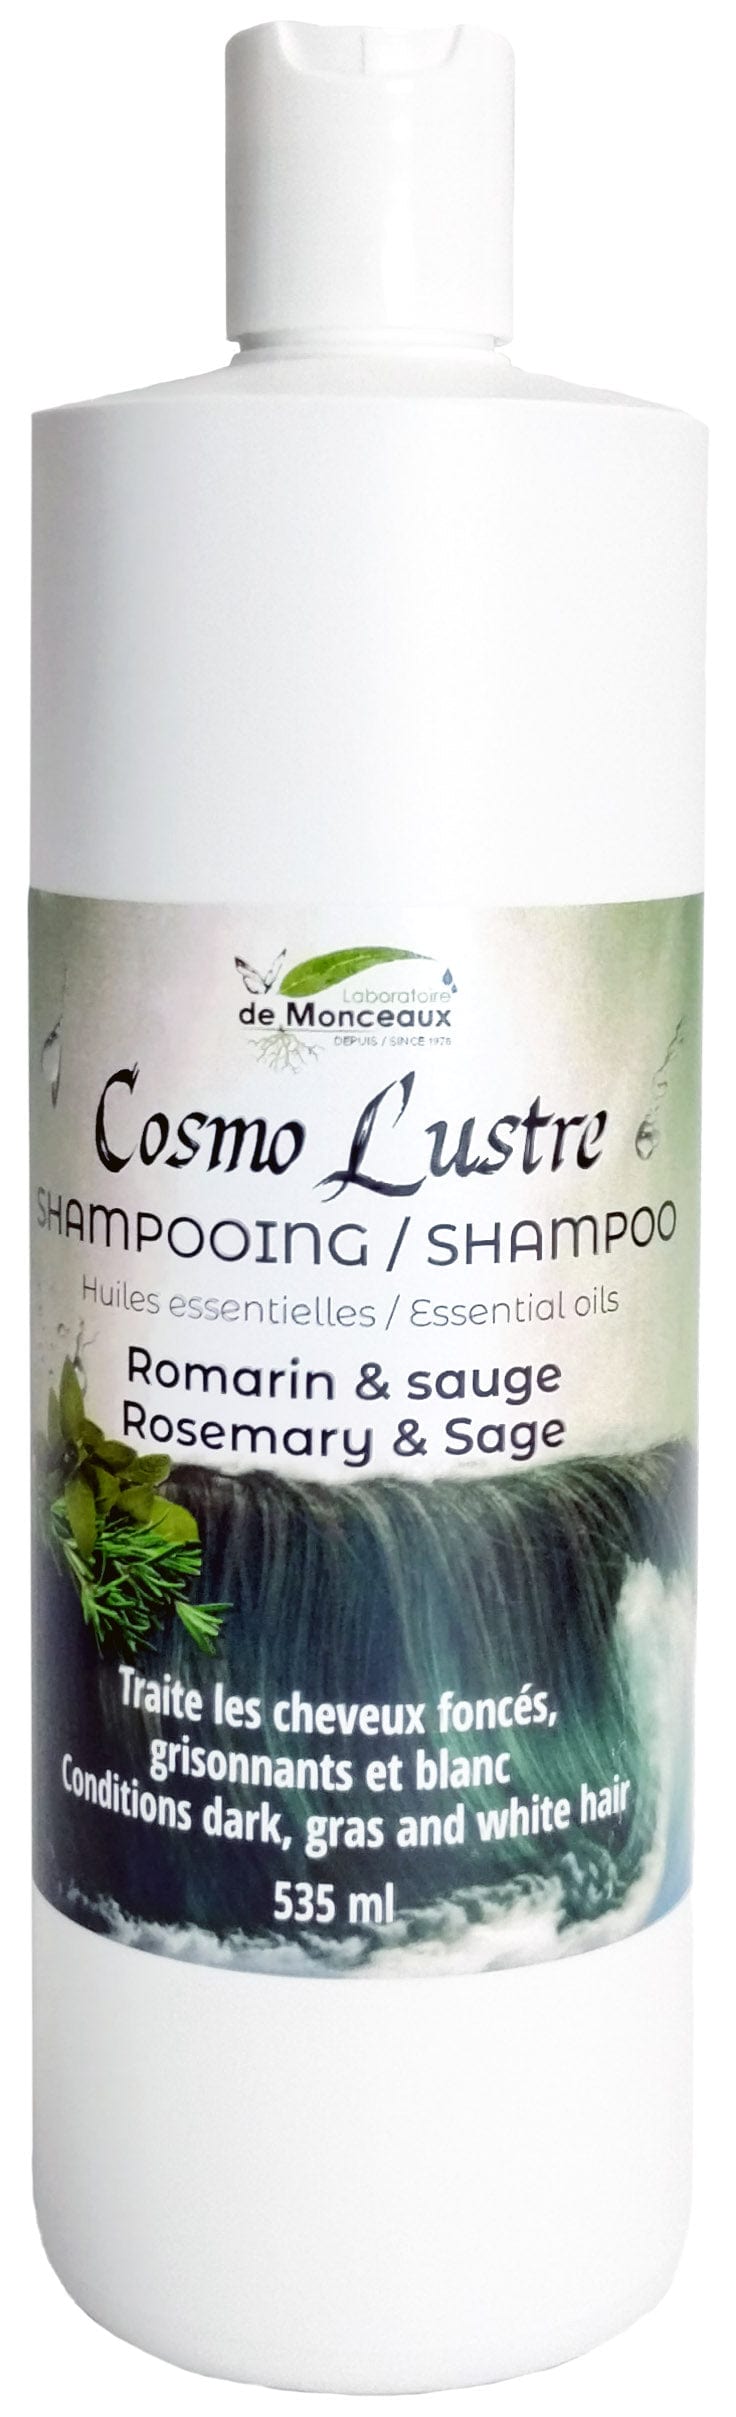 LABORATOIRE DEMONCEAUX Soins & beauté Shampoing romarin / sauge 535ml